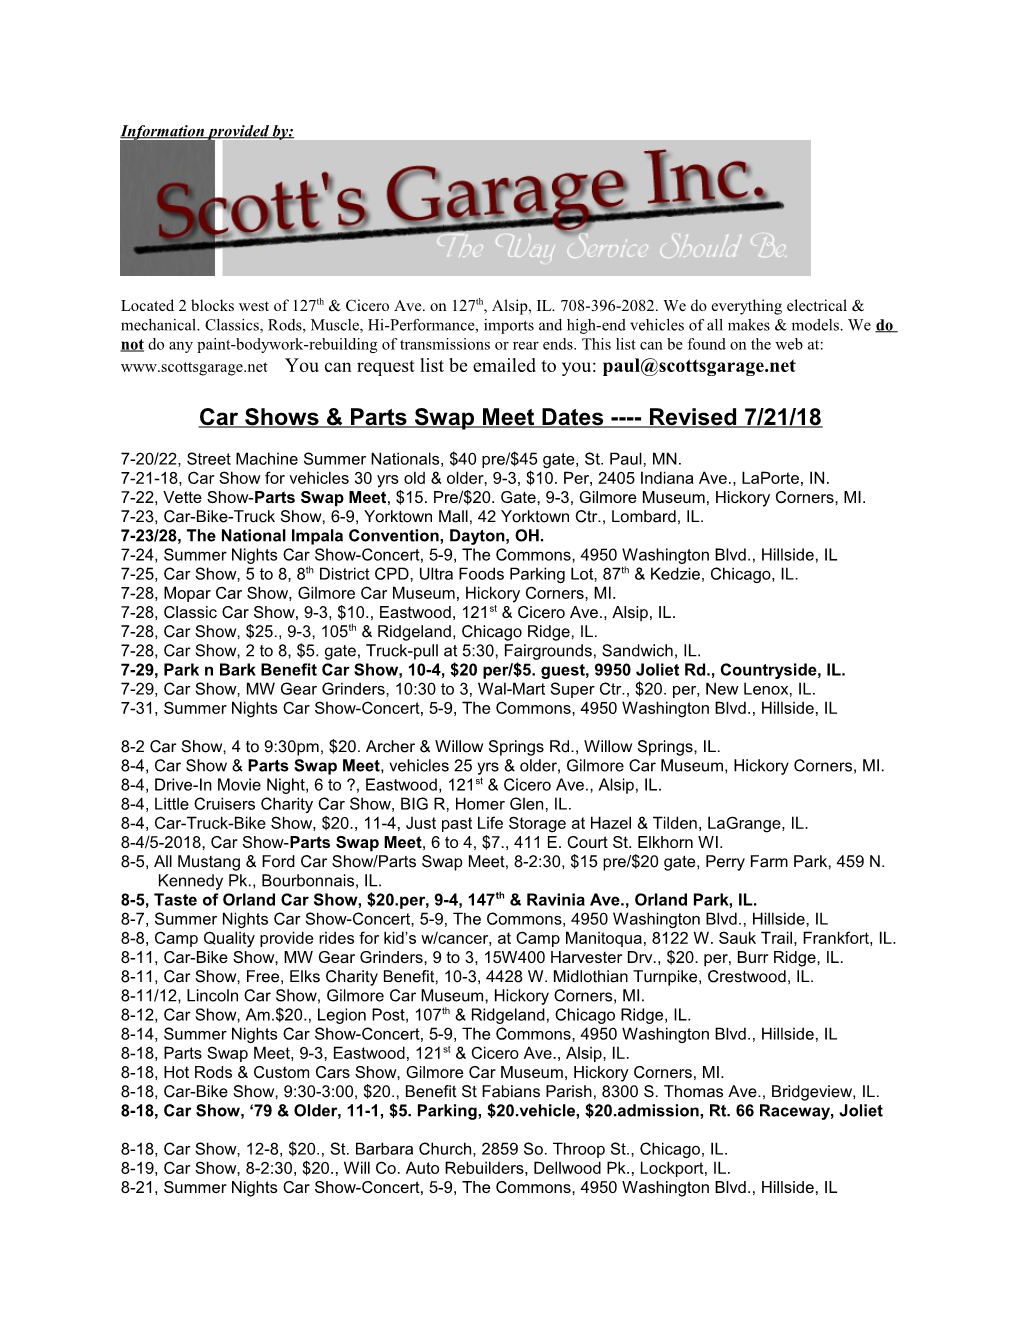 Car Shows & Parts Swap Meet Dates Revised 7/21/18